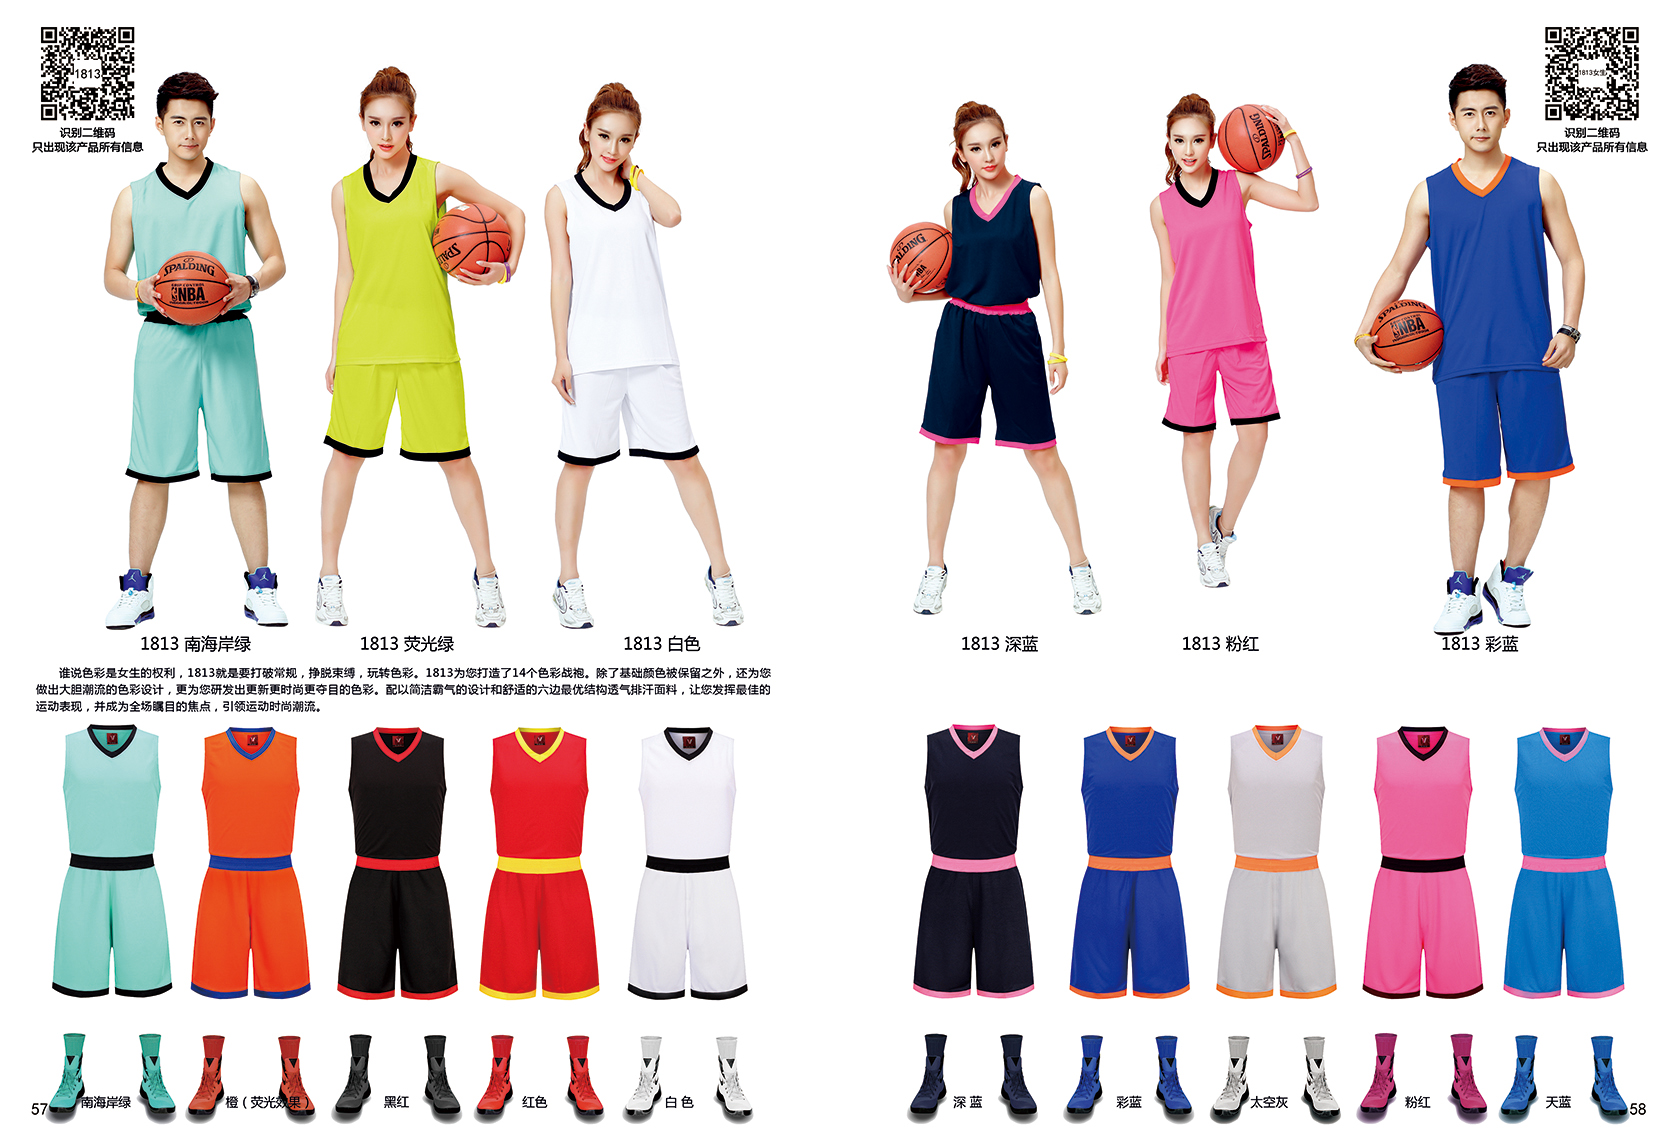 球服生產 湛江比賽足籃球乒羽排球服定制廠家定做 籃球服